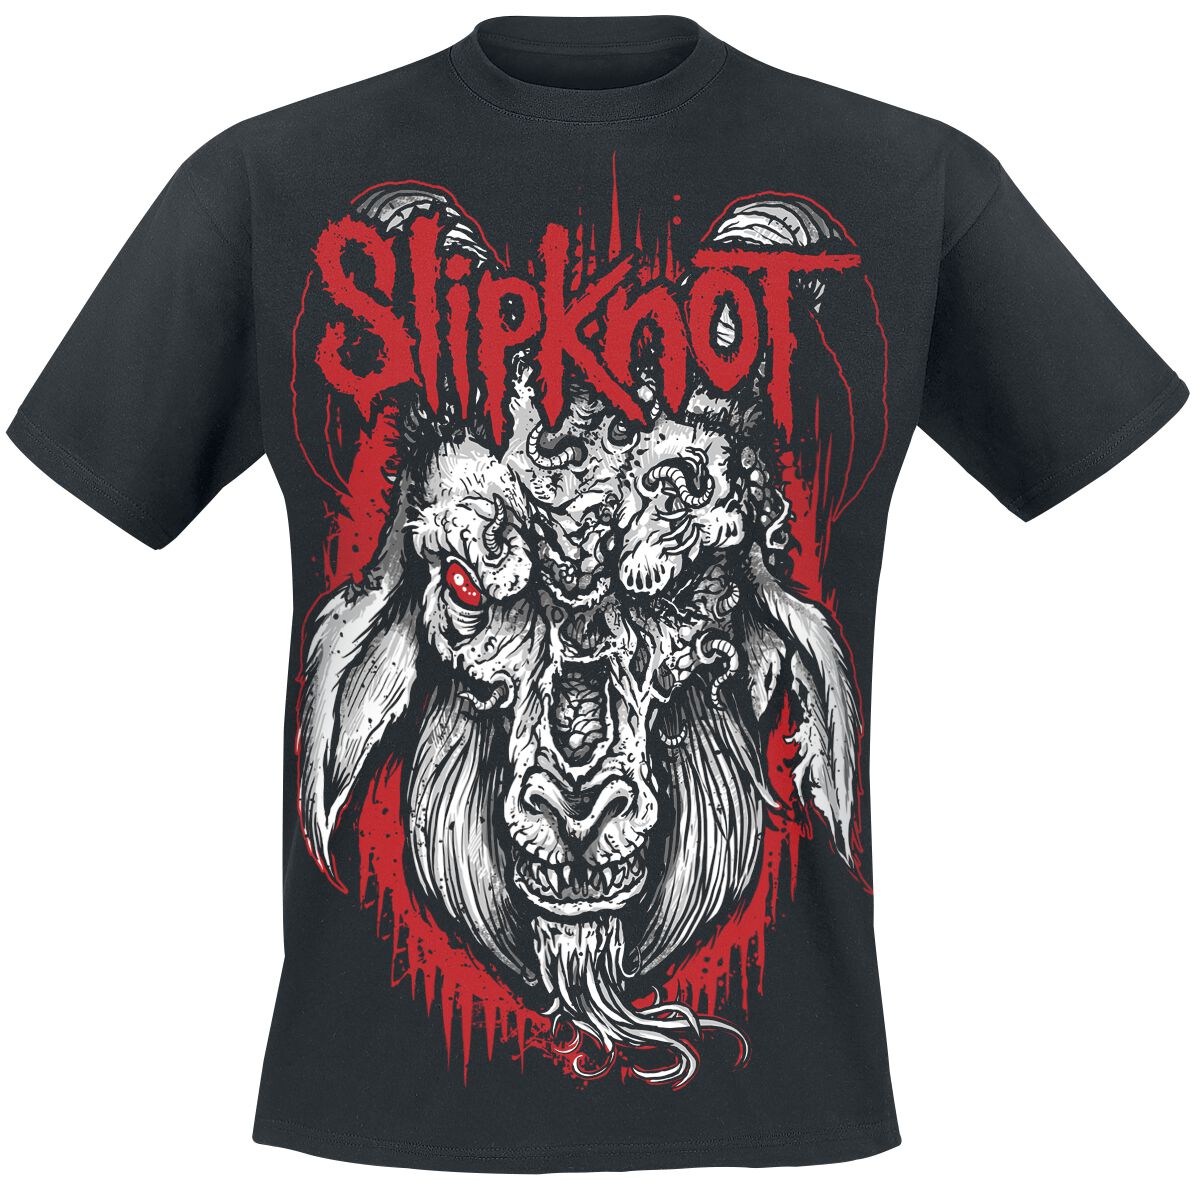 Slipknot T-Shirt - Rotting Goat - S bis 5XL - für Männer - Größe 5XL - schwarz  - Lizenziertes Merchandise!